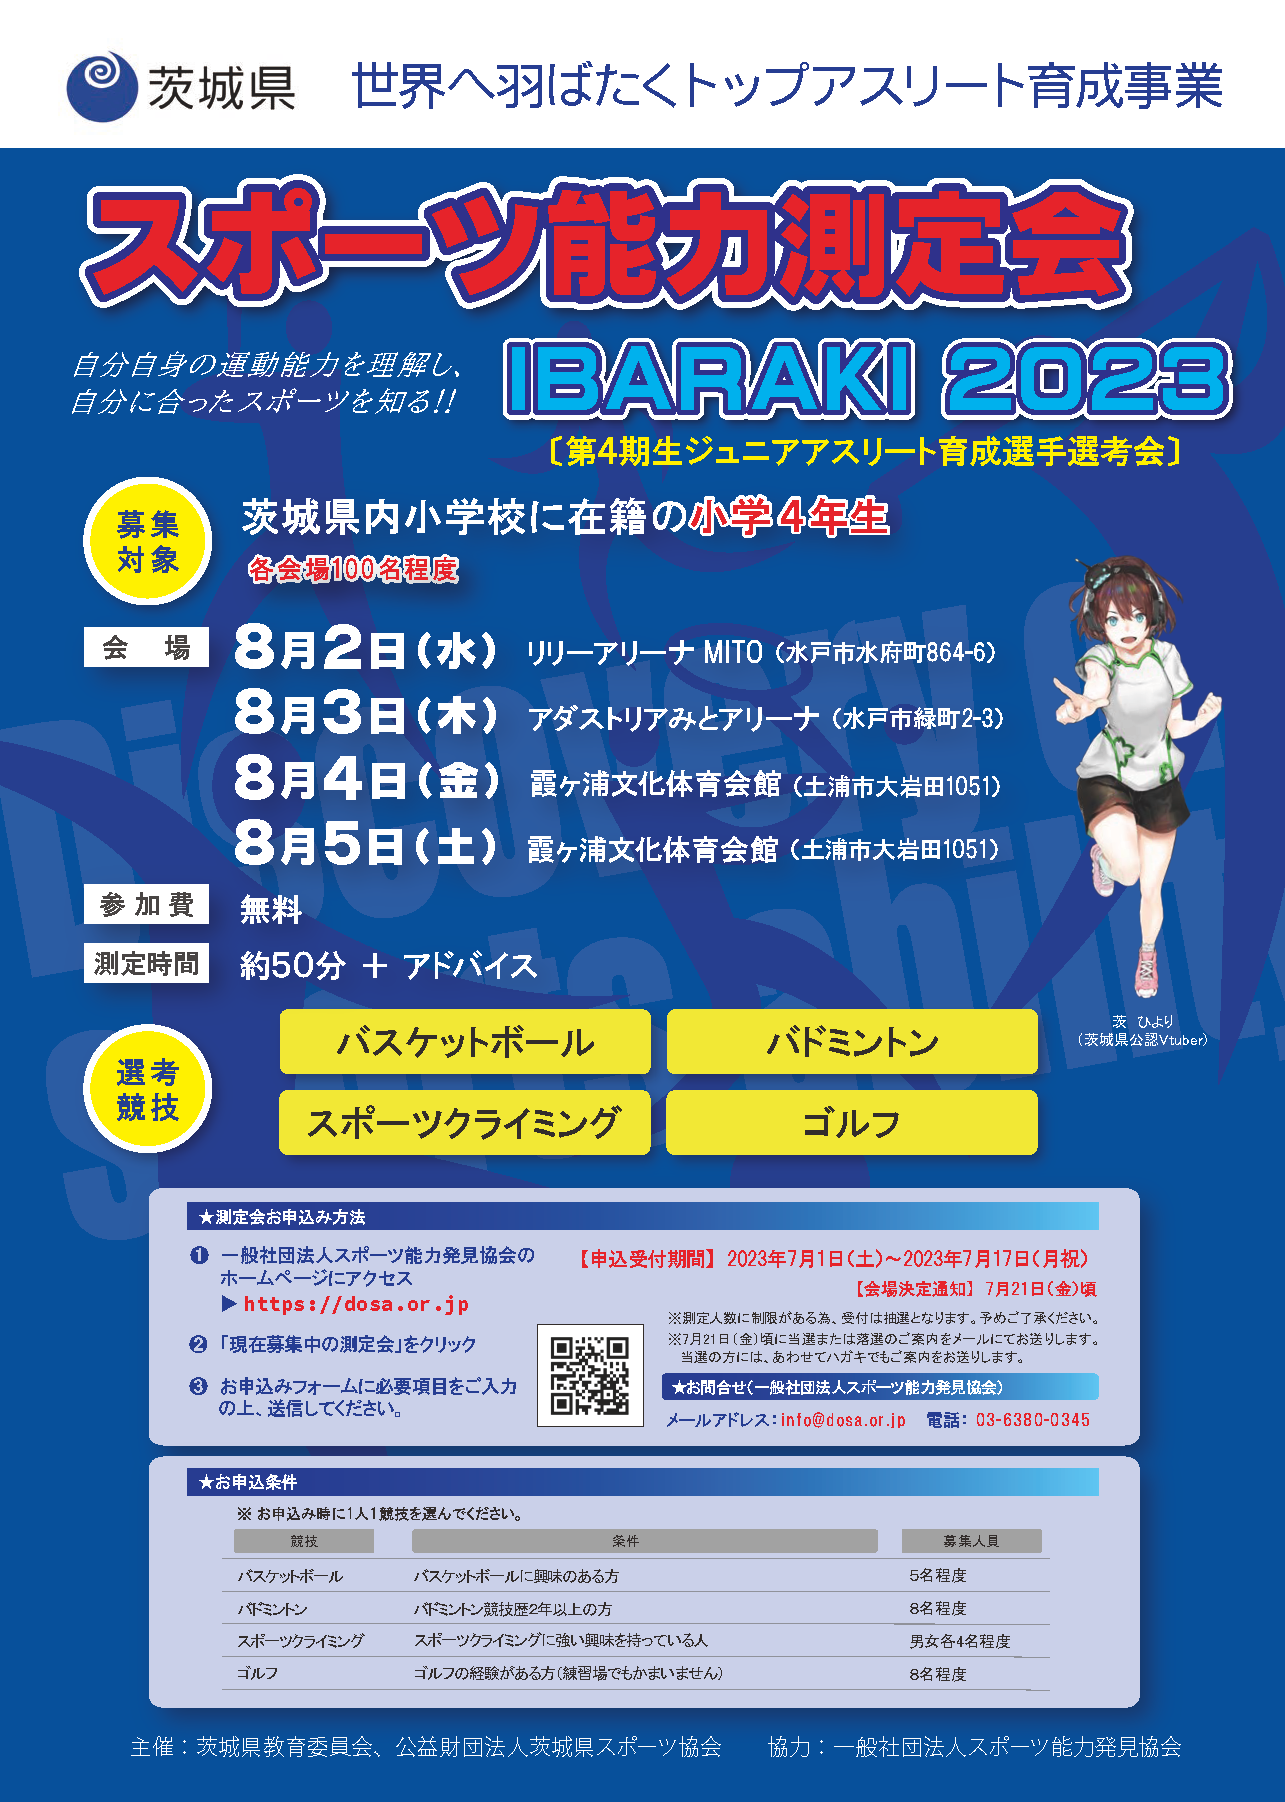 【全4回】スポーツ能力測定会 IBARAKI2023 （第4期生ジュニアアスリート育成選手選考会）を開催します。